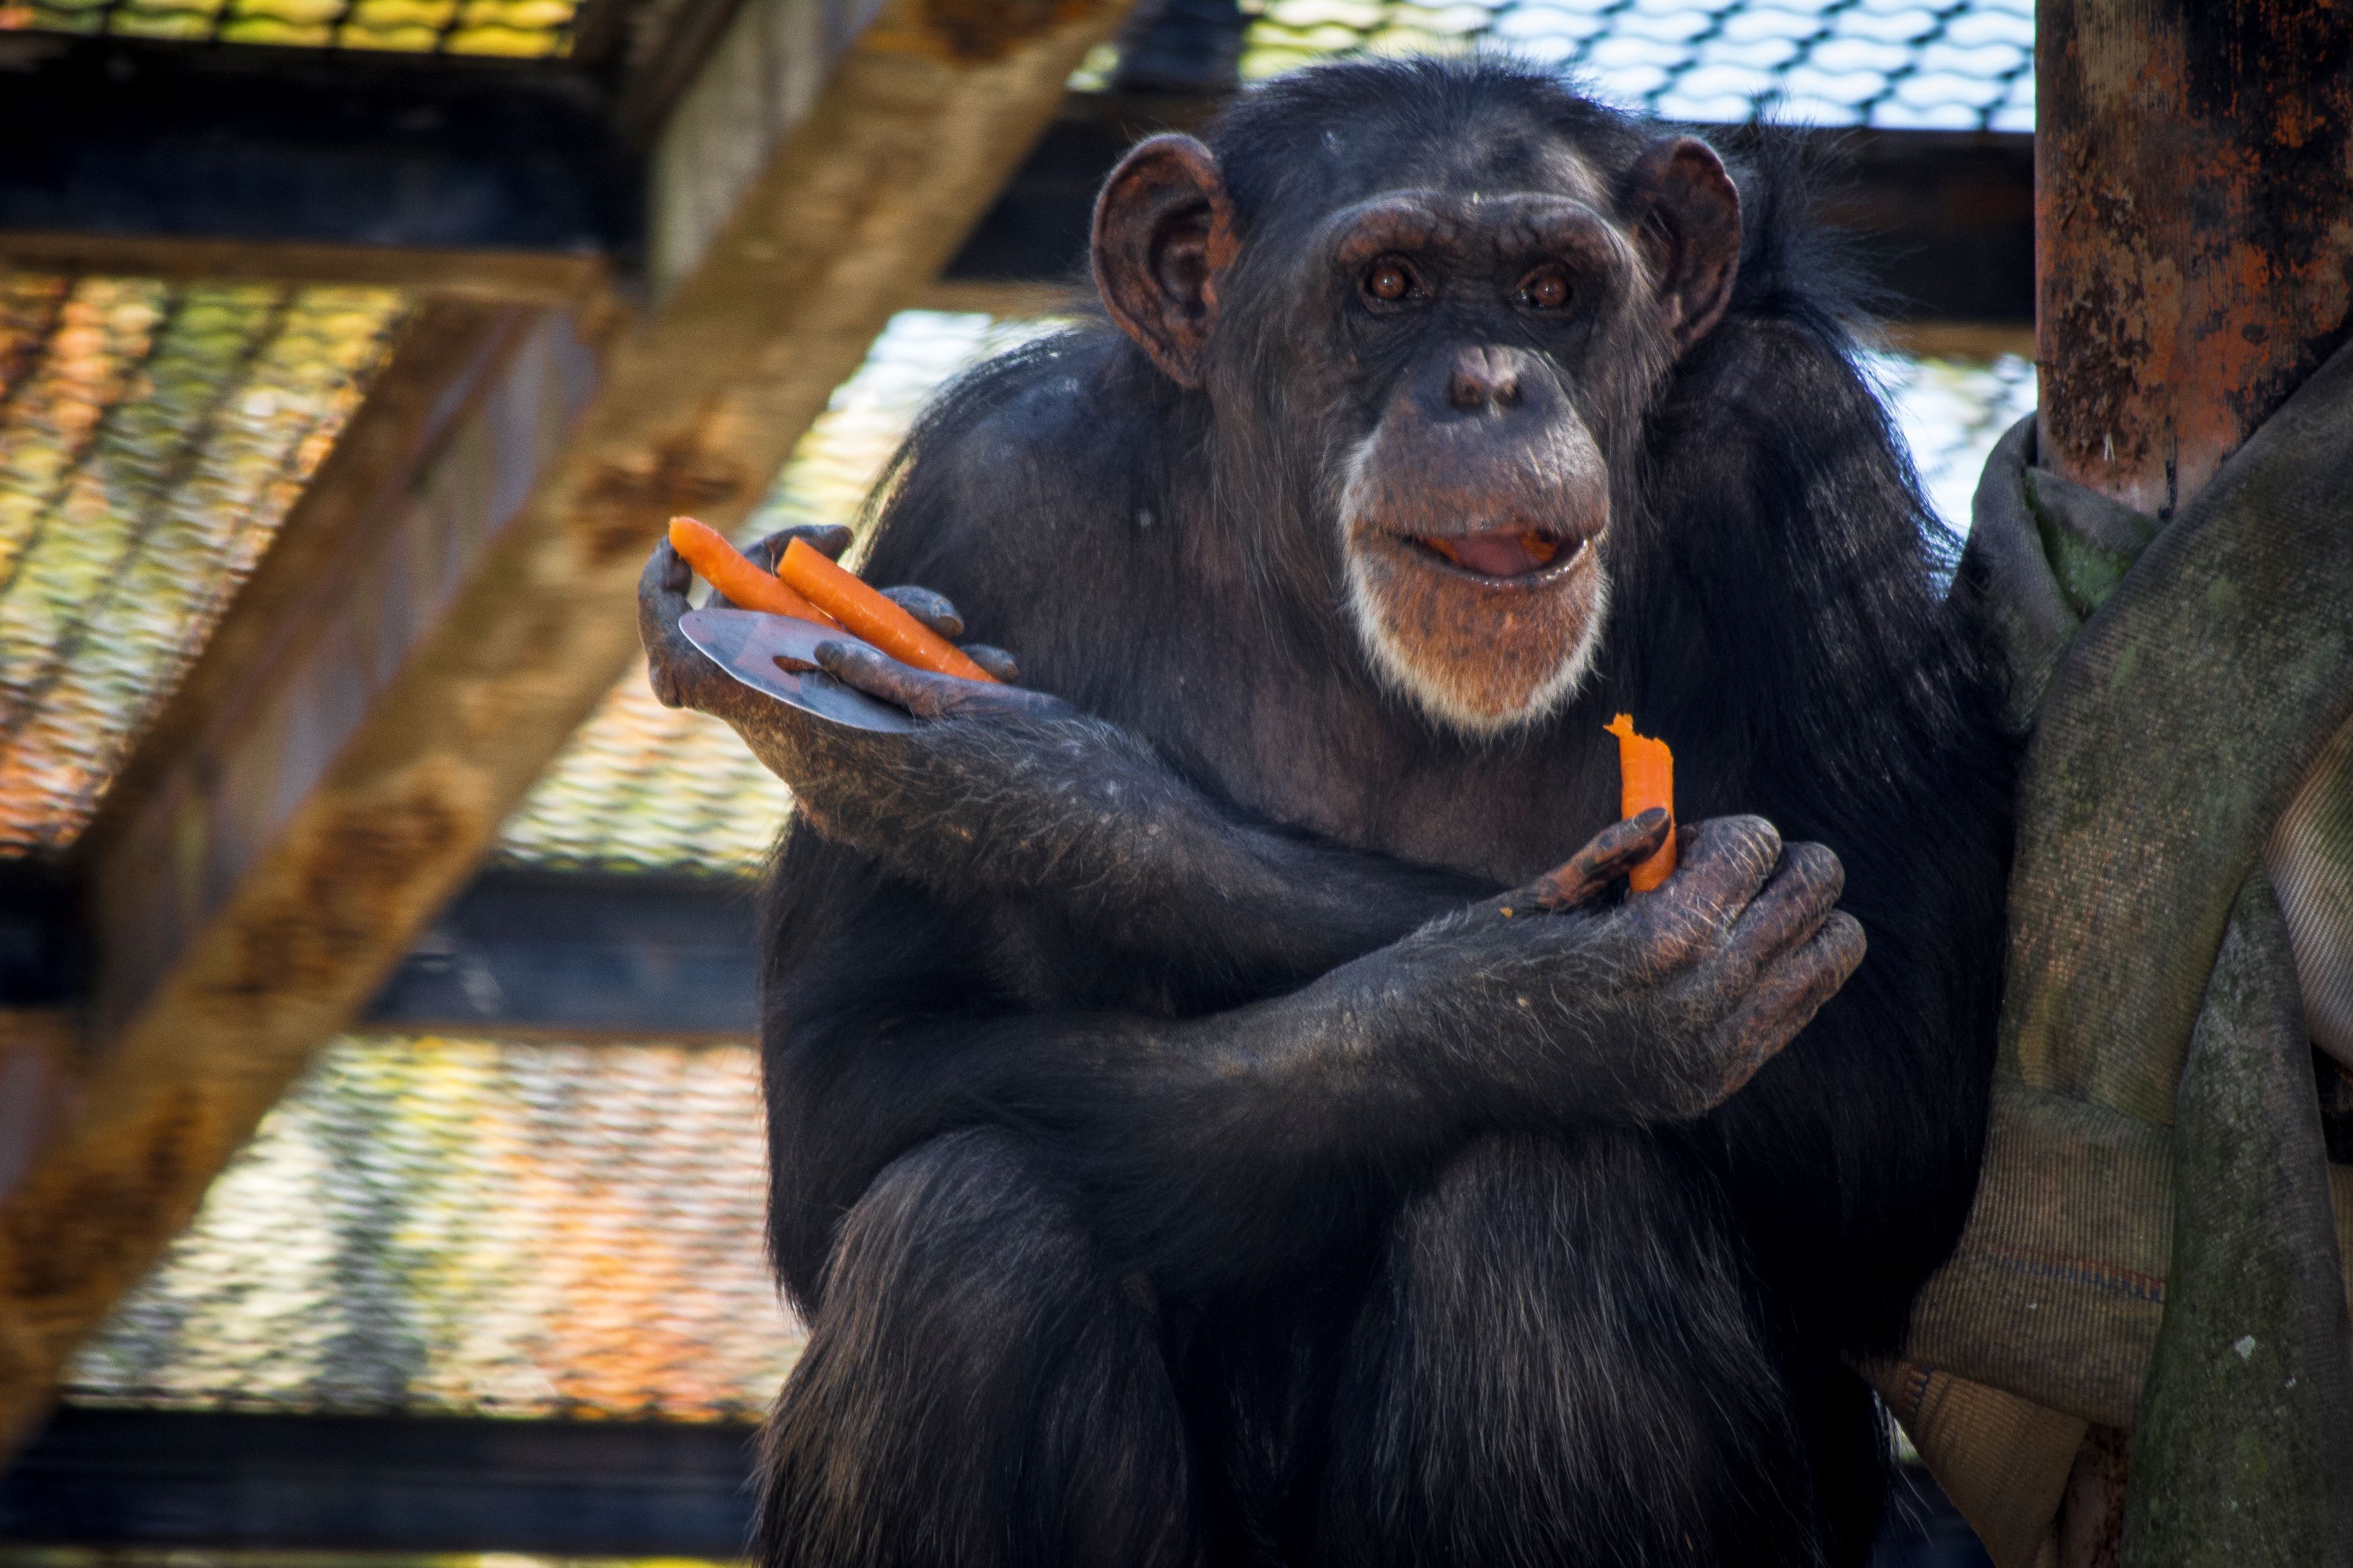 La chimpancé Lulú, del Zoobotánico de Jerez, a la que ha llegado la hora de 'jubilarse'.